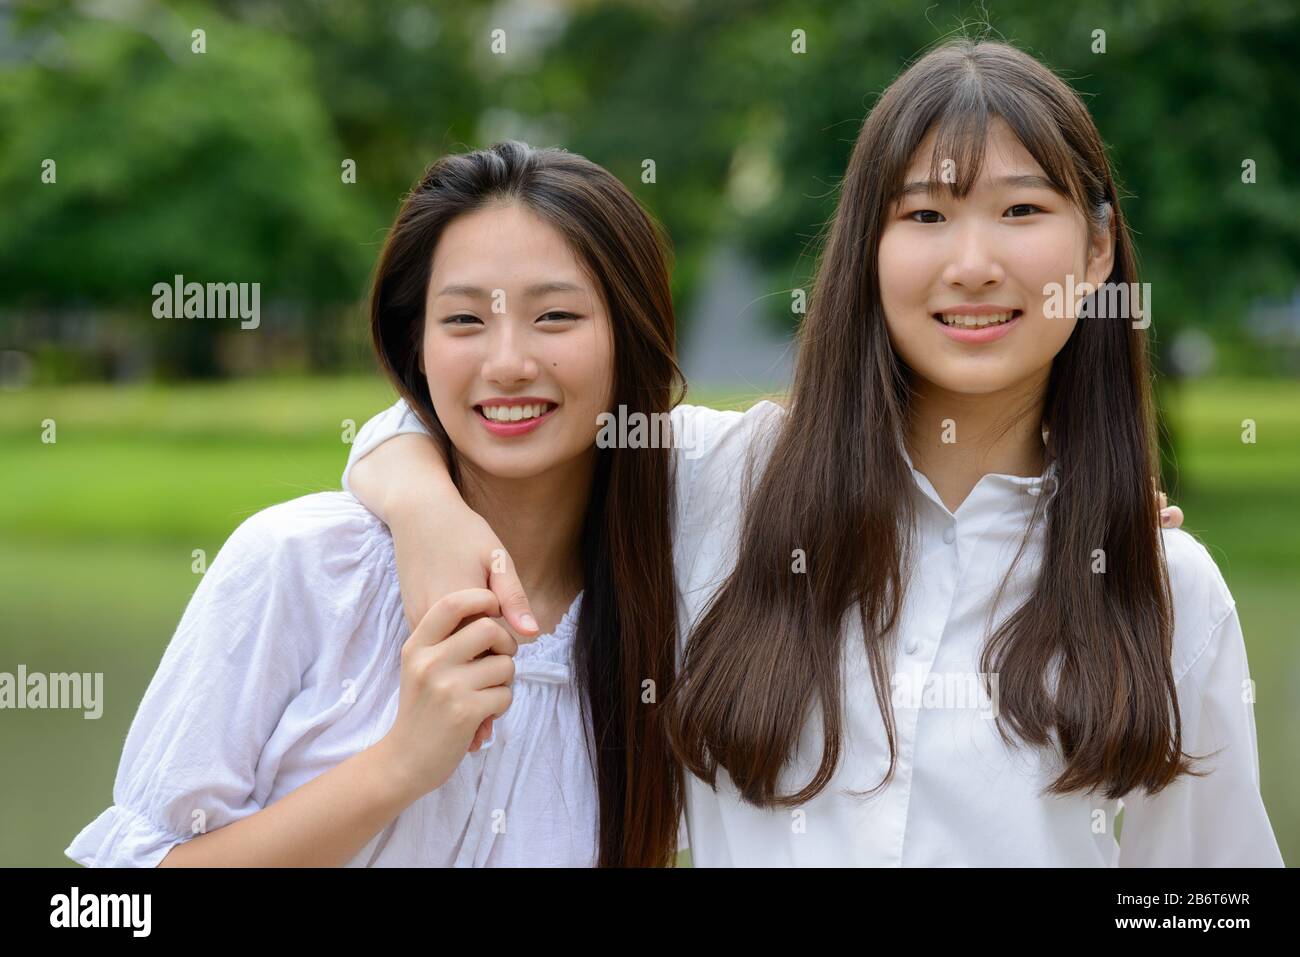 Zwei glückliche junge, schöne asiatische Teenager-Mädchen, die sich im Park vereinigen Stockfoto